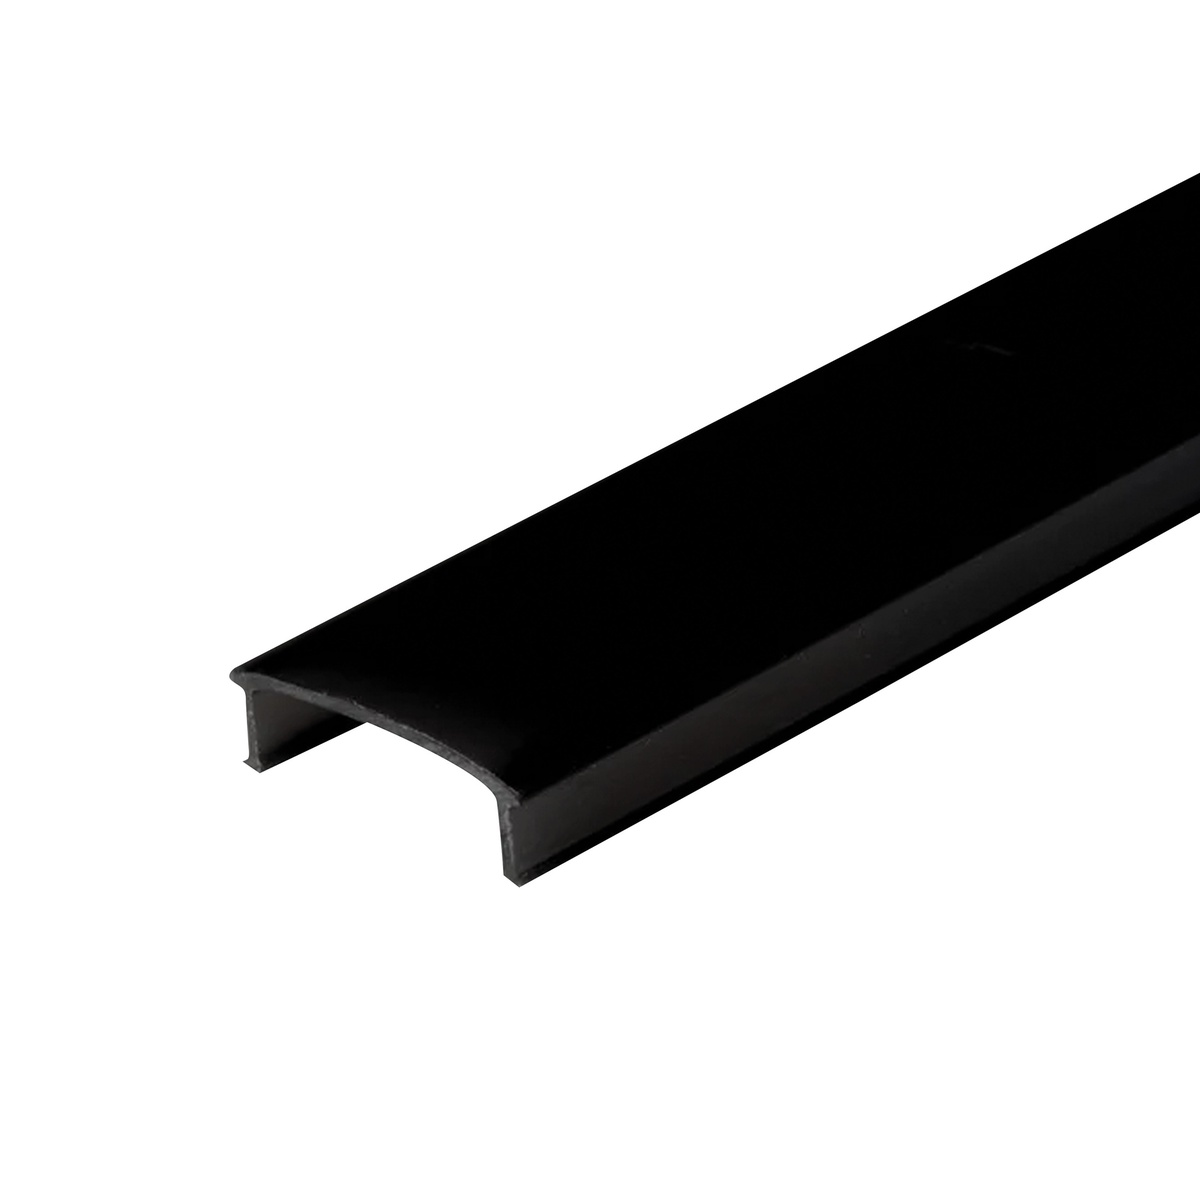 Black difusser for aluminum profile 204025040-41-42